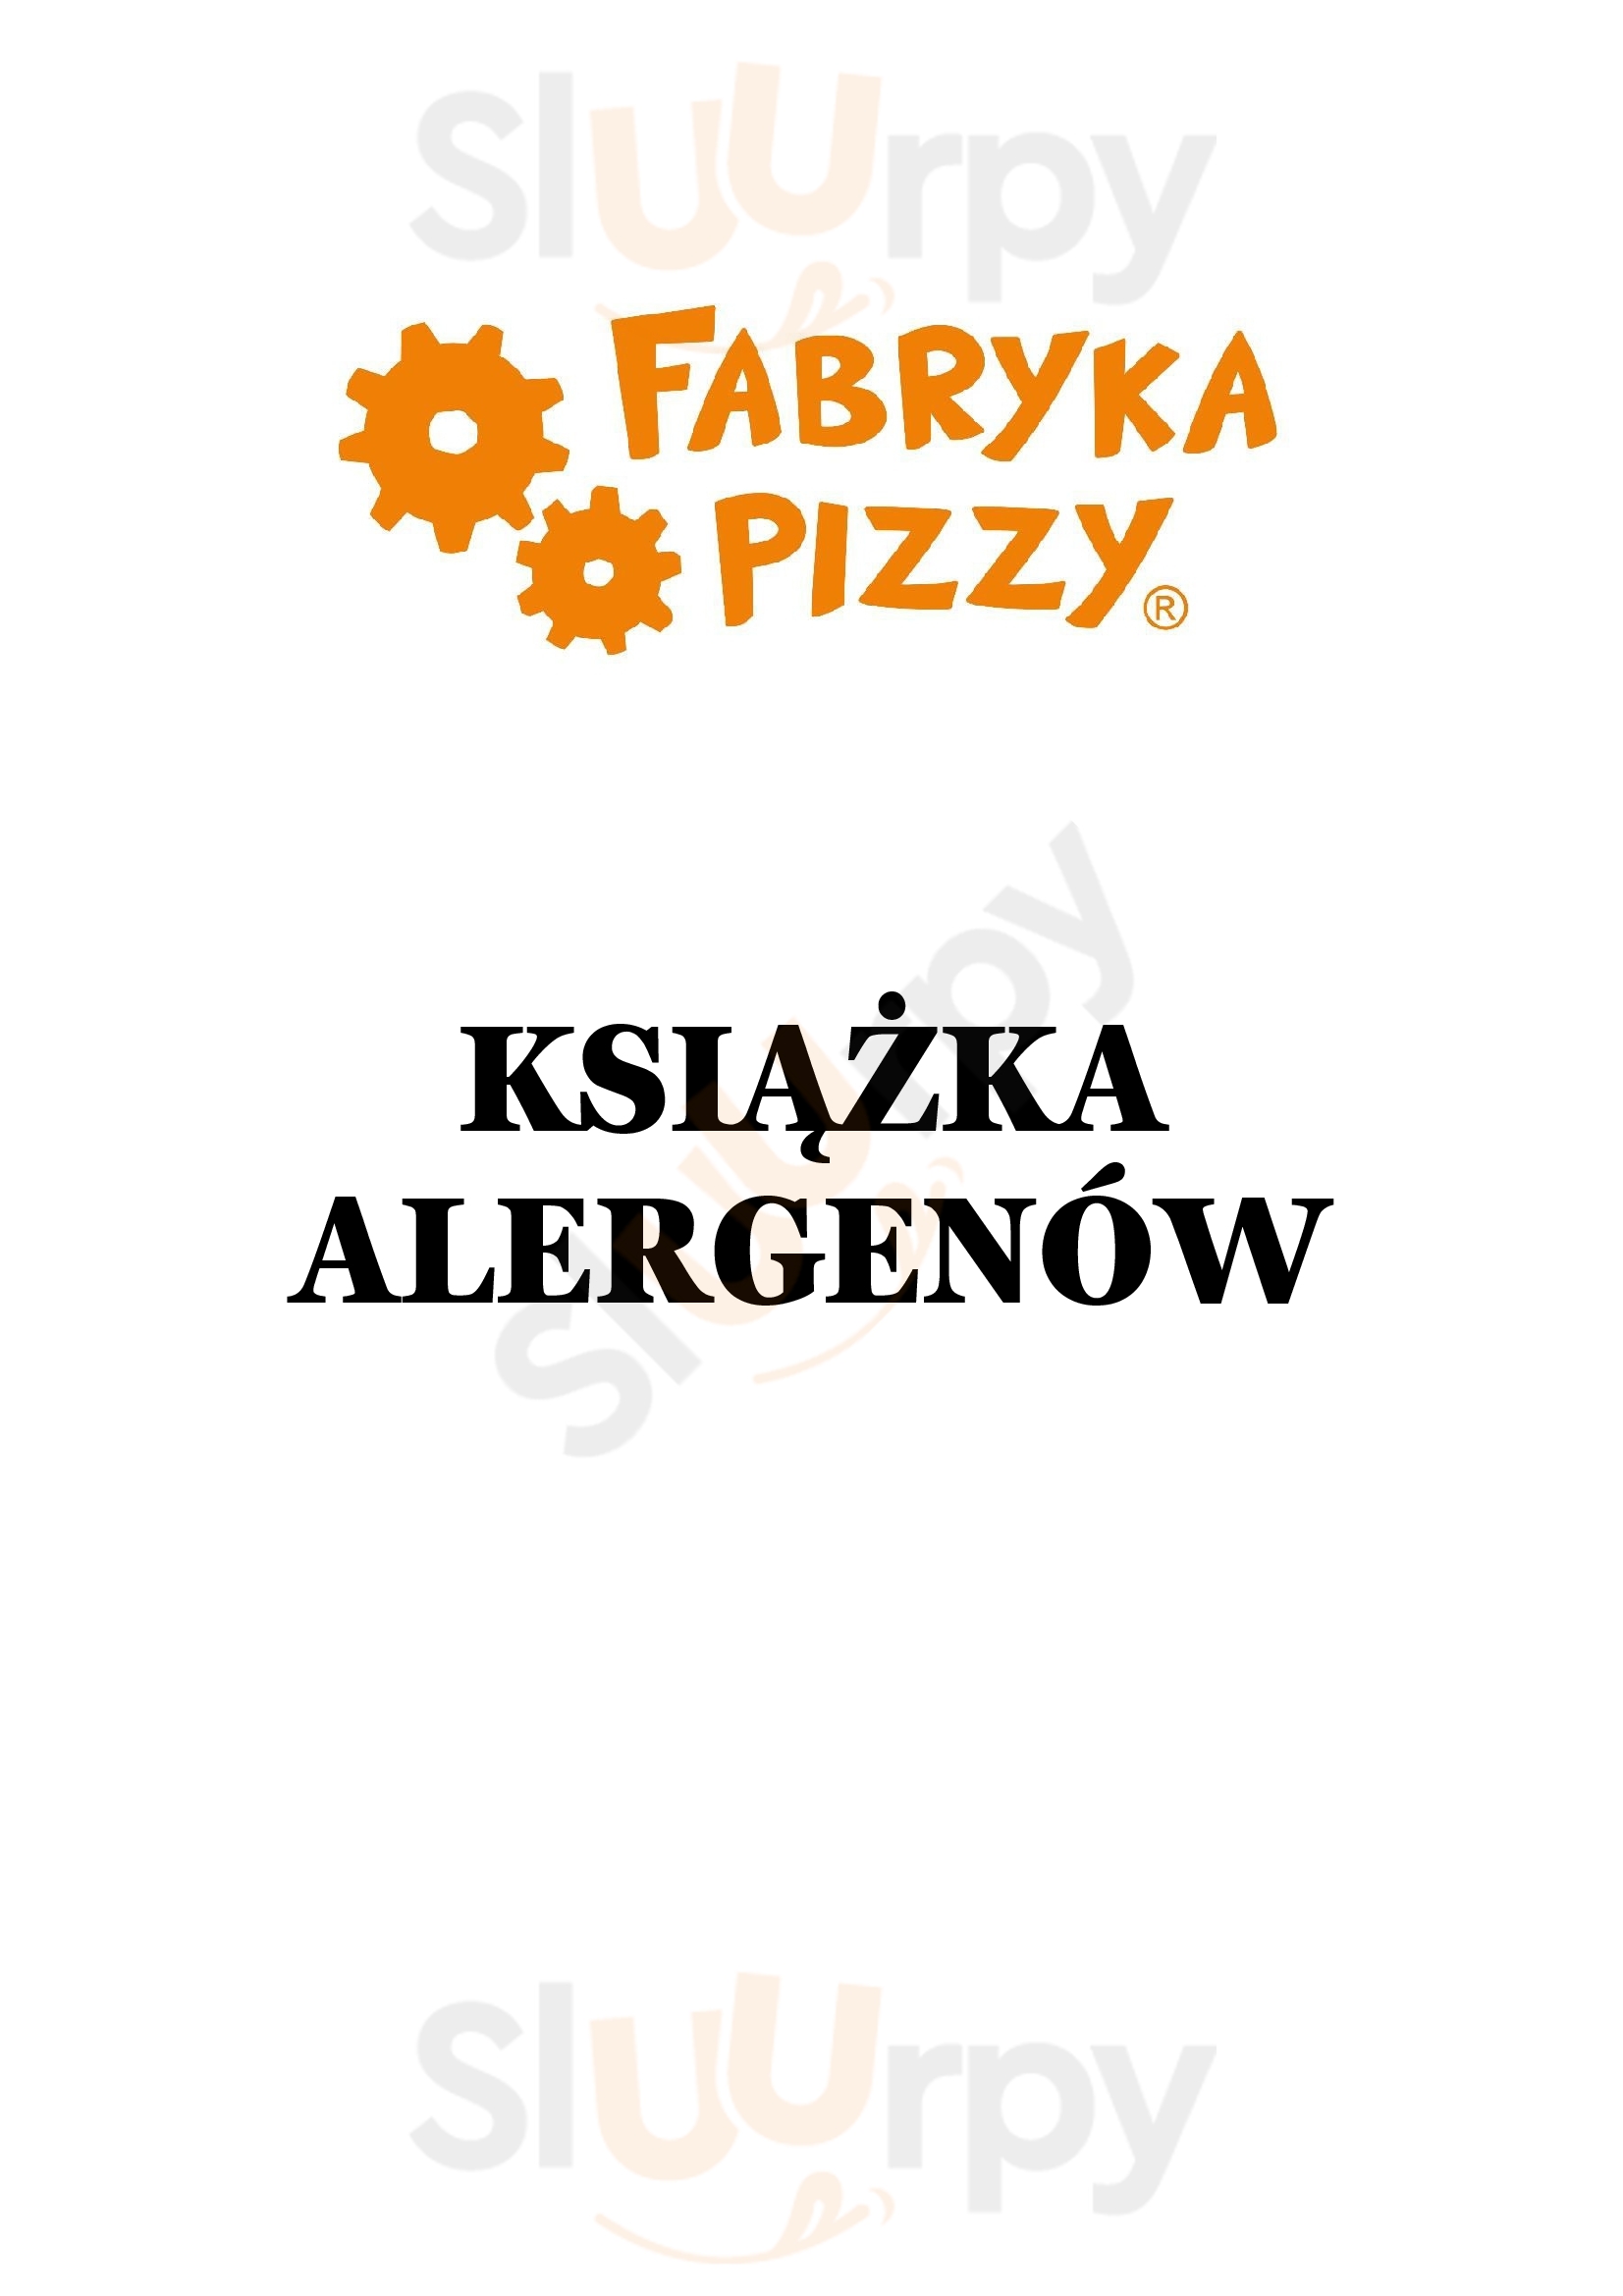 Fabryka Pizzy Sławkowska Kraków Menu - 1